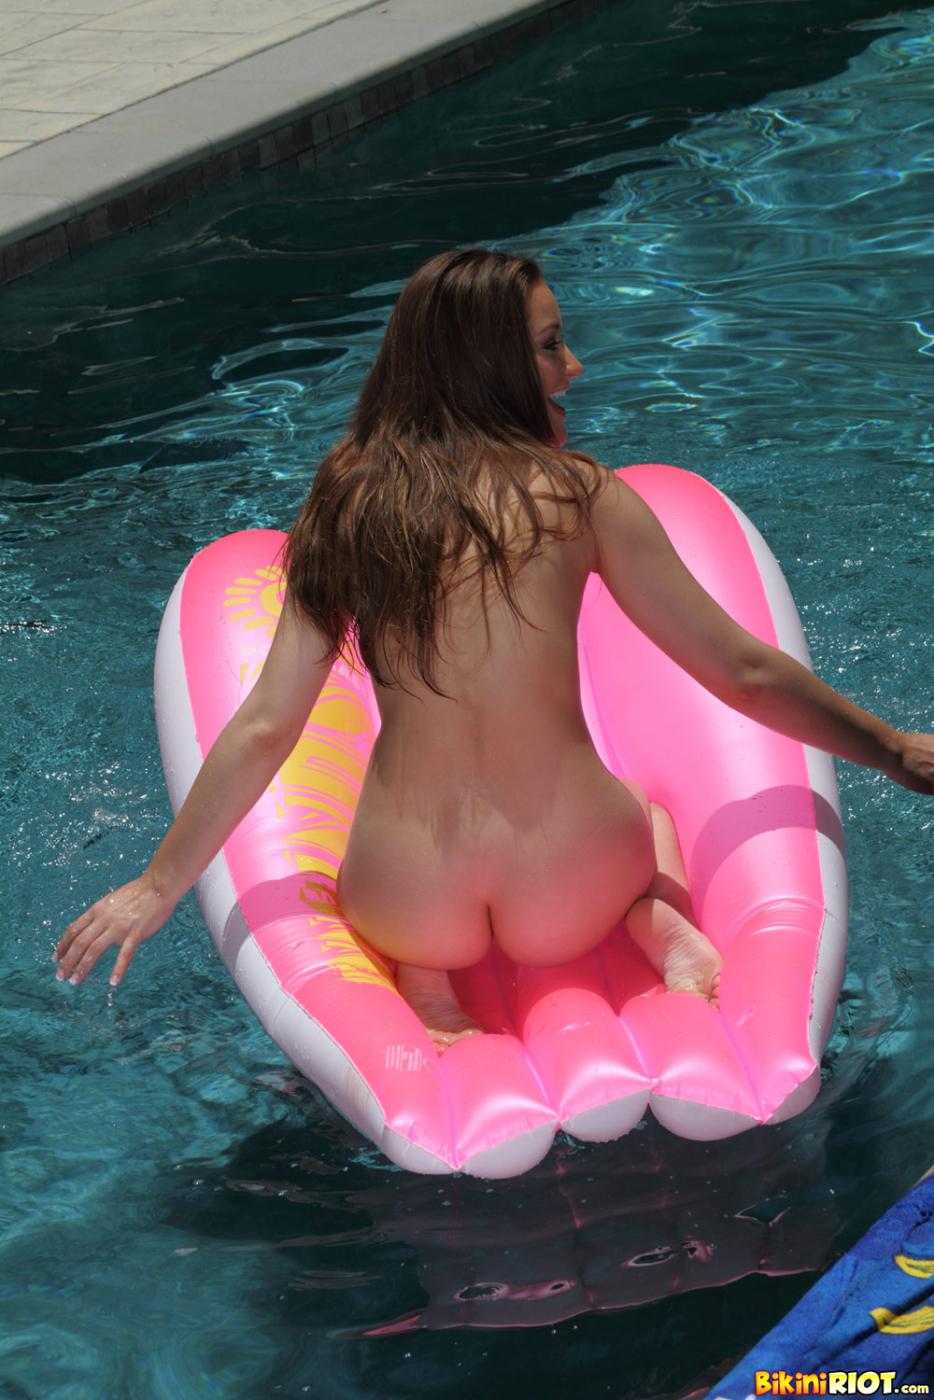 Sweet teen brunette Dani Daniels takes off her green mini bikini in the pool